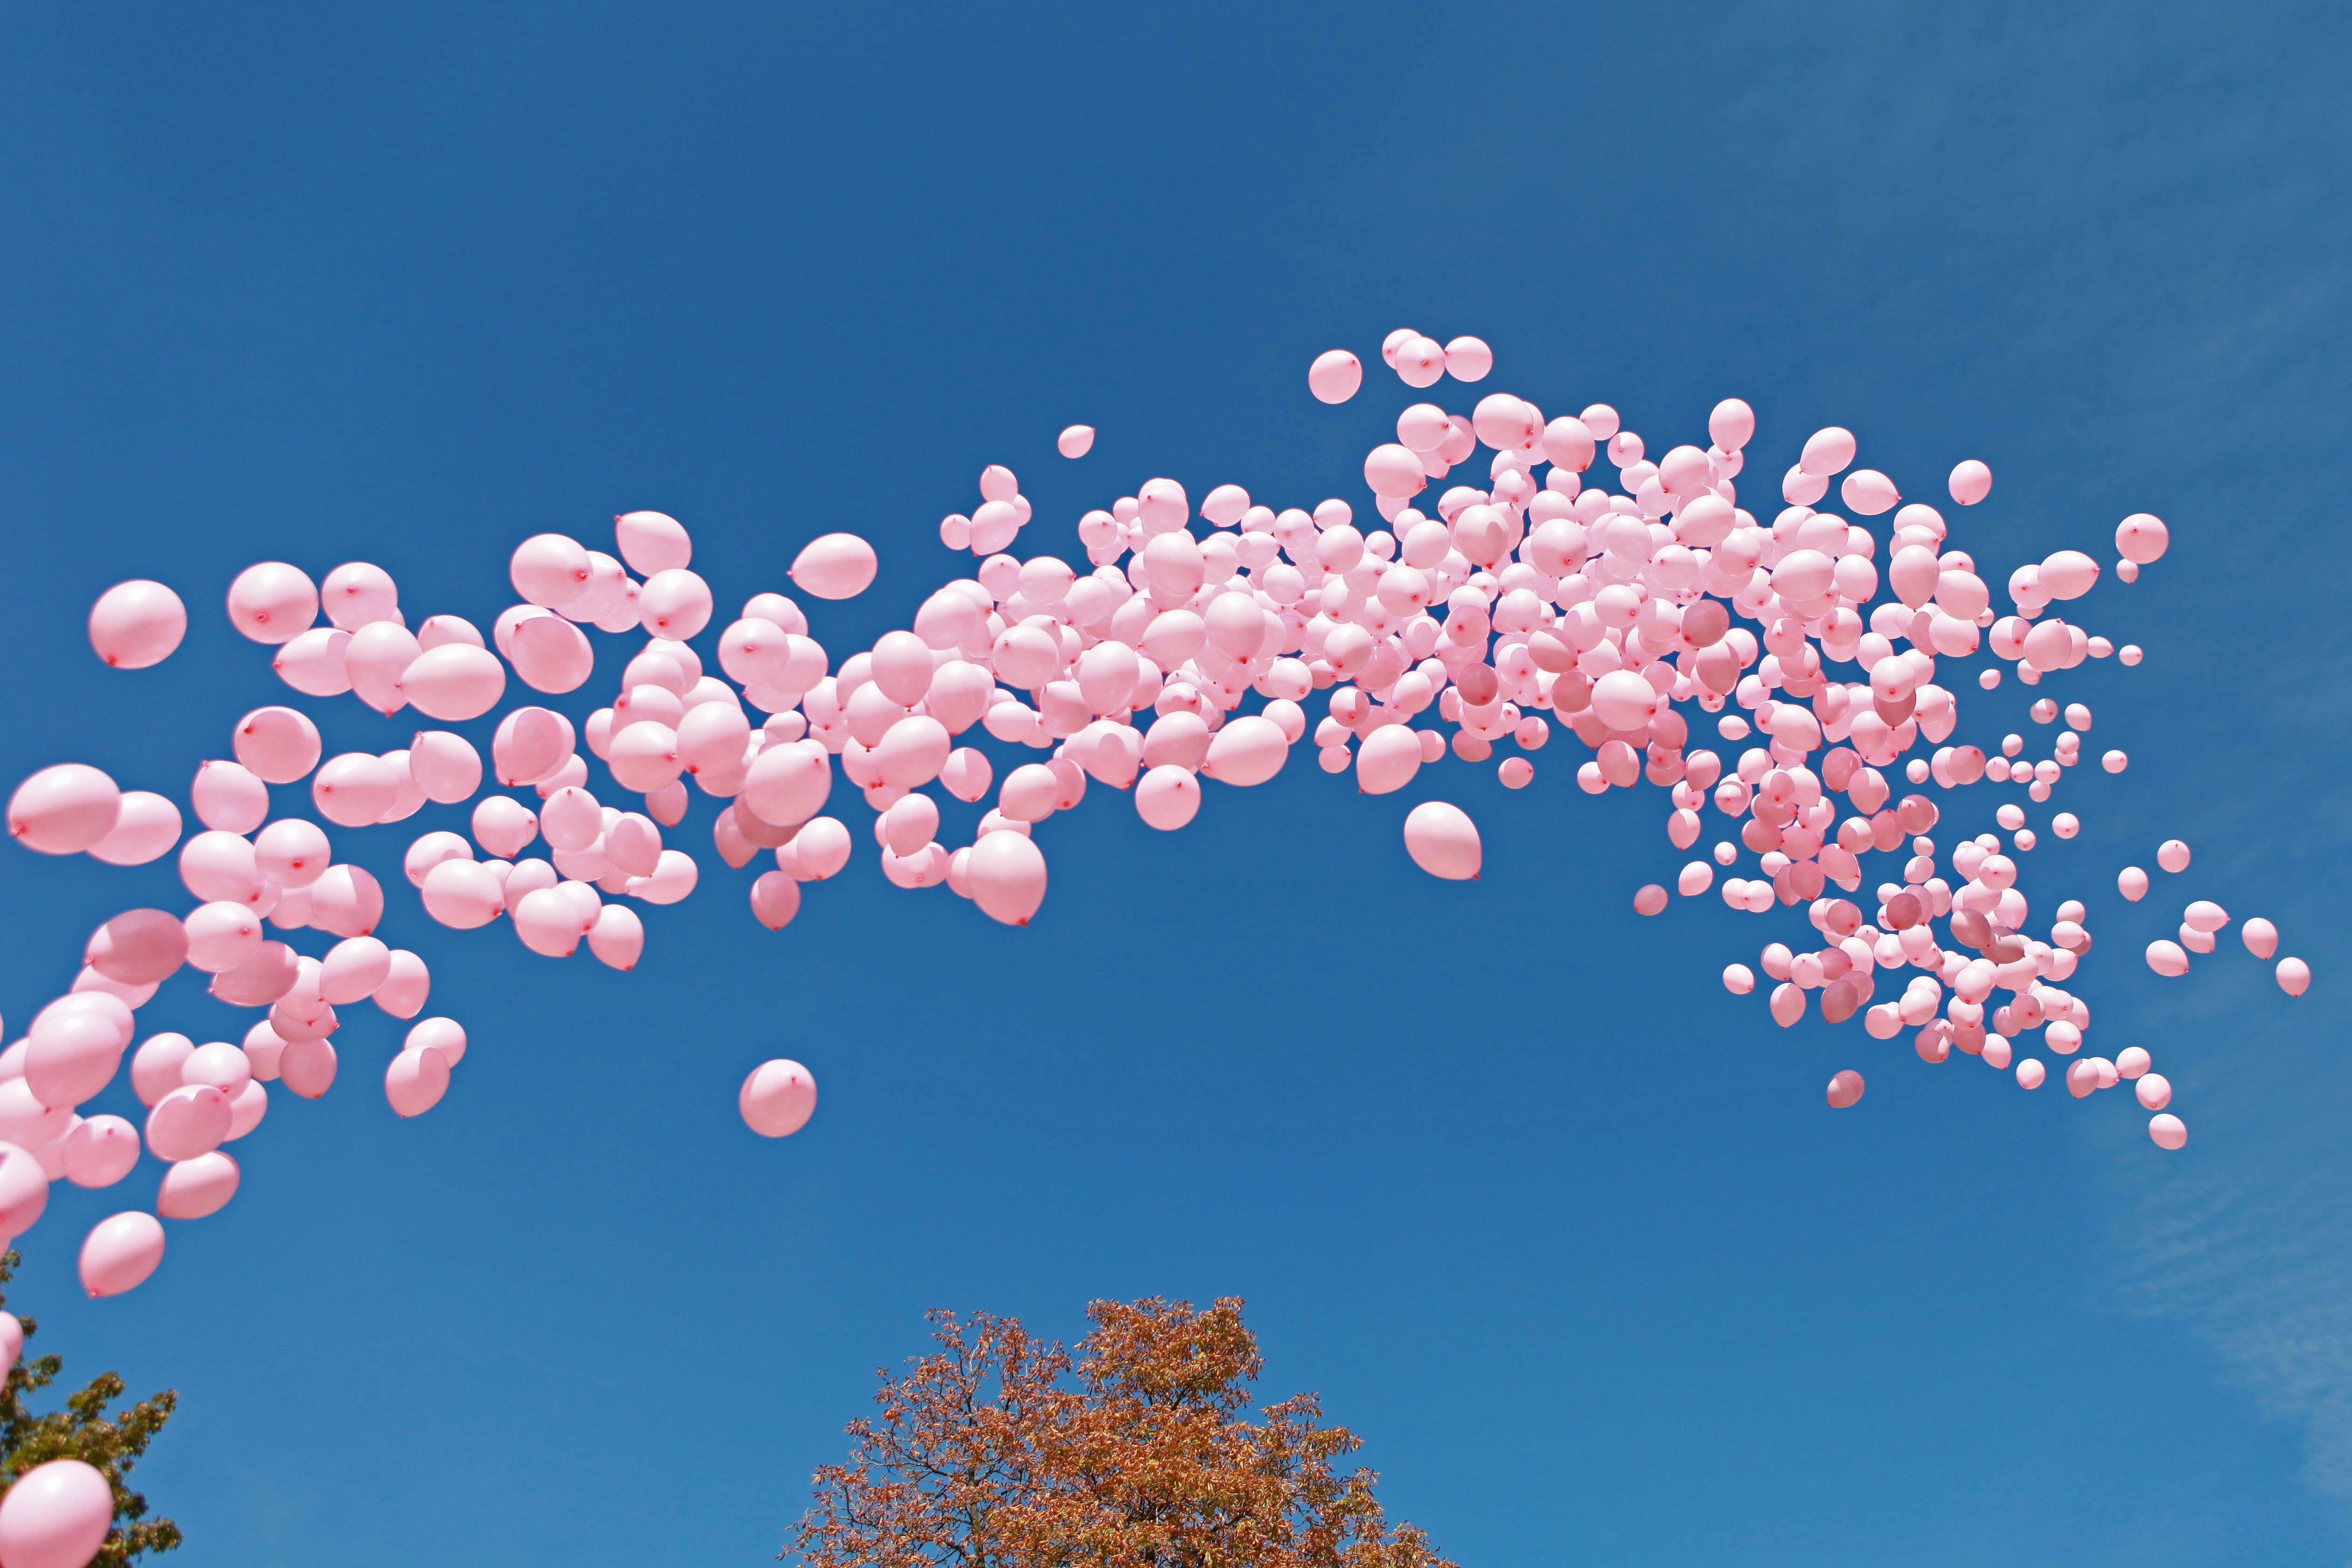 1200 розови балона полетяха в памет на жените, които губят битката с рака на гърдата